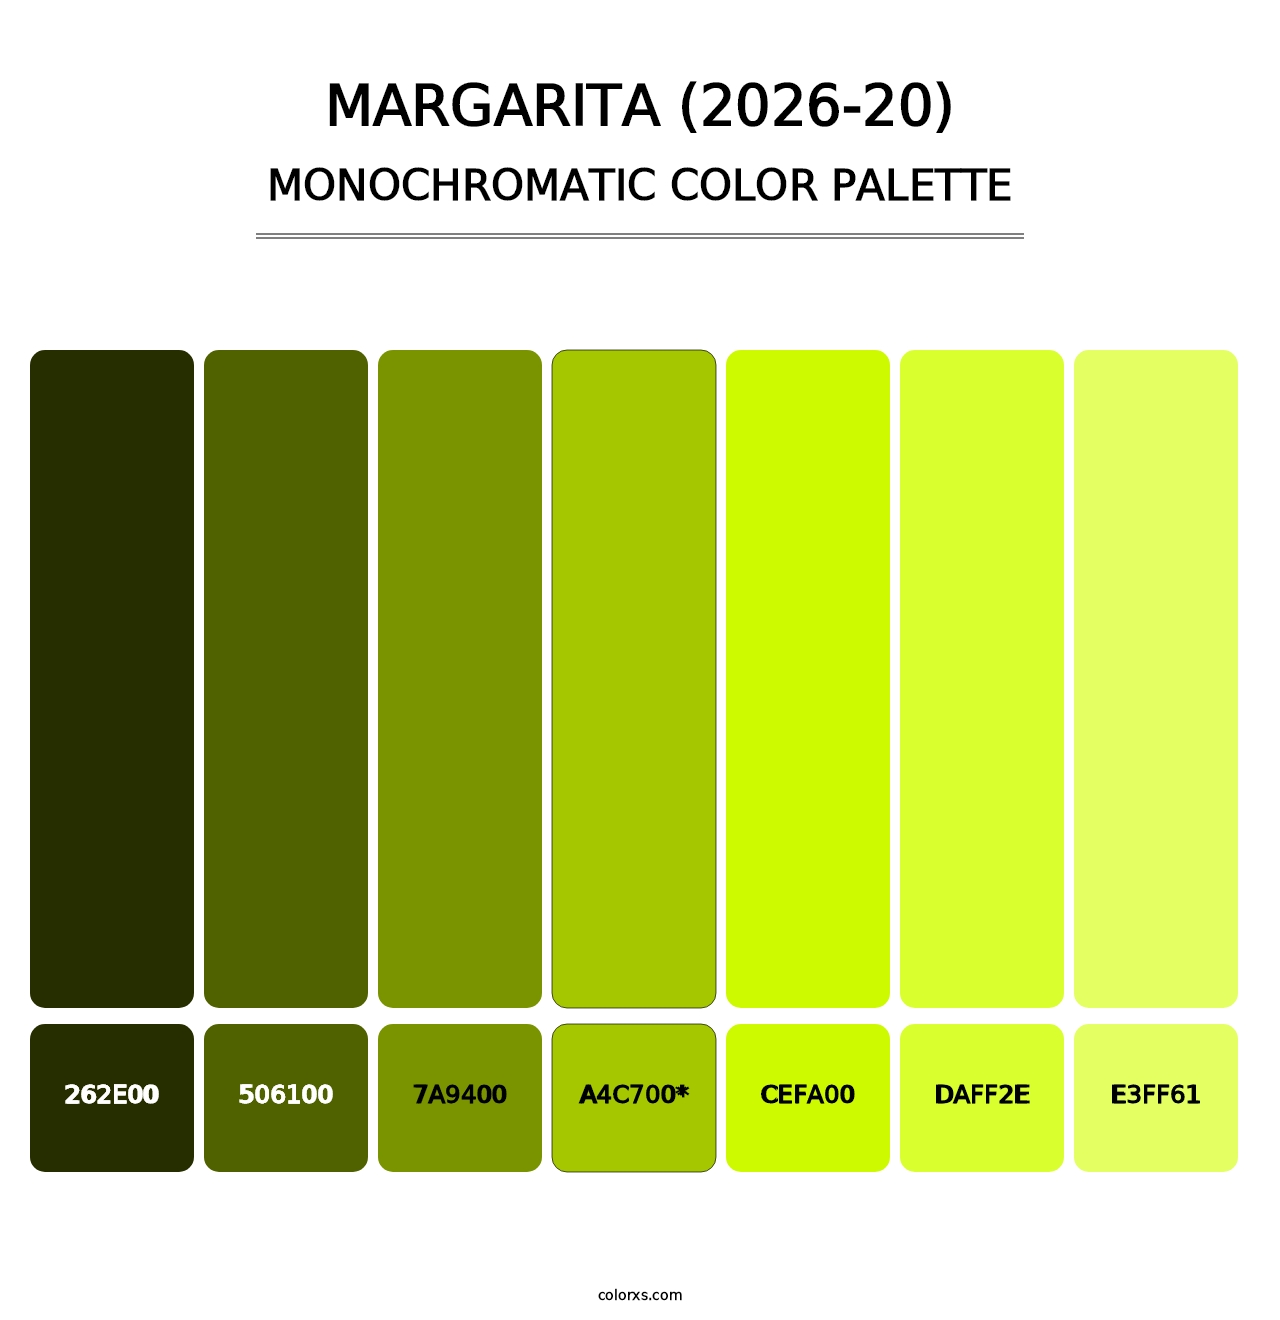 Margarita (2026-20) - Monochromatic Color Palette